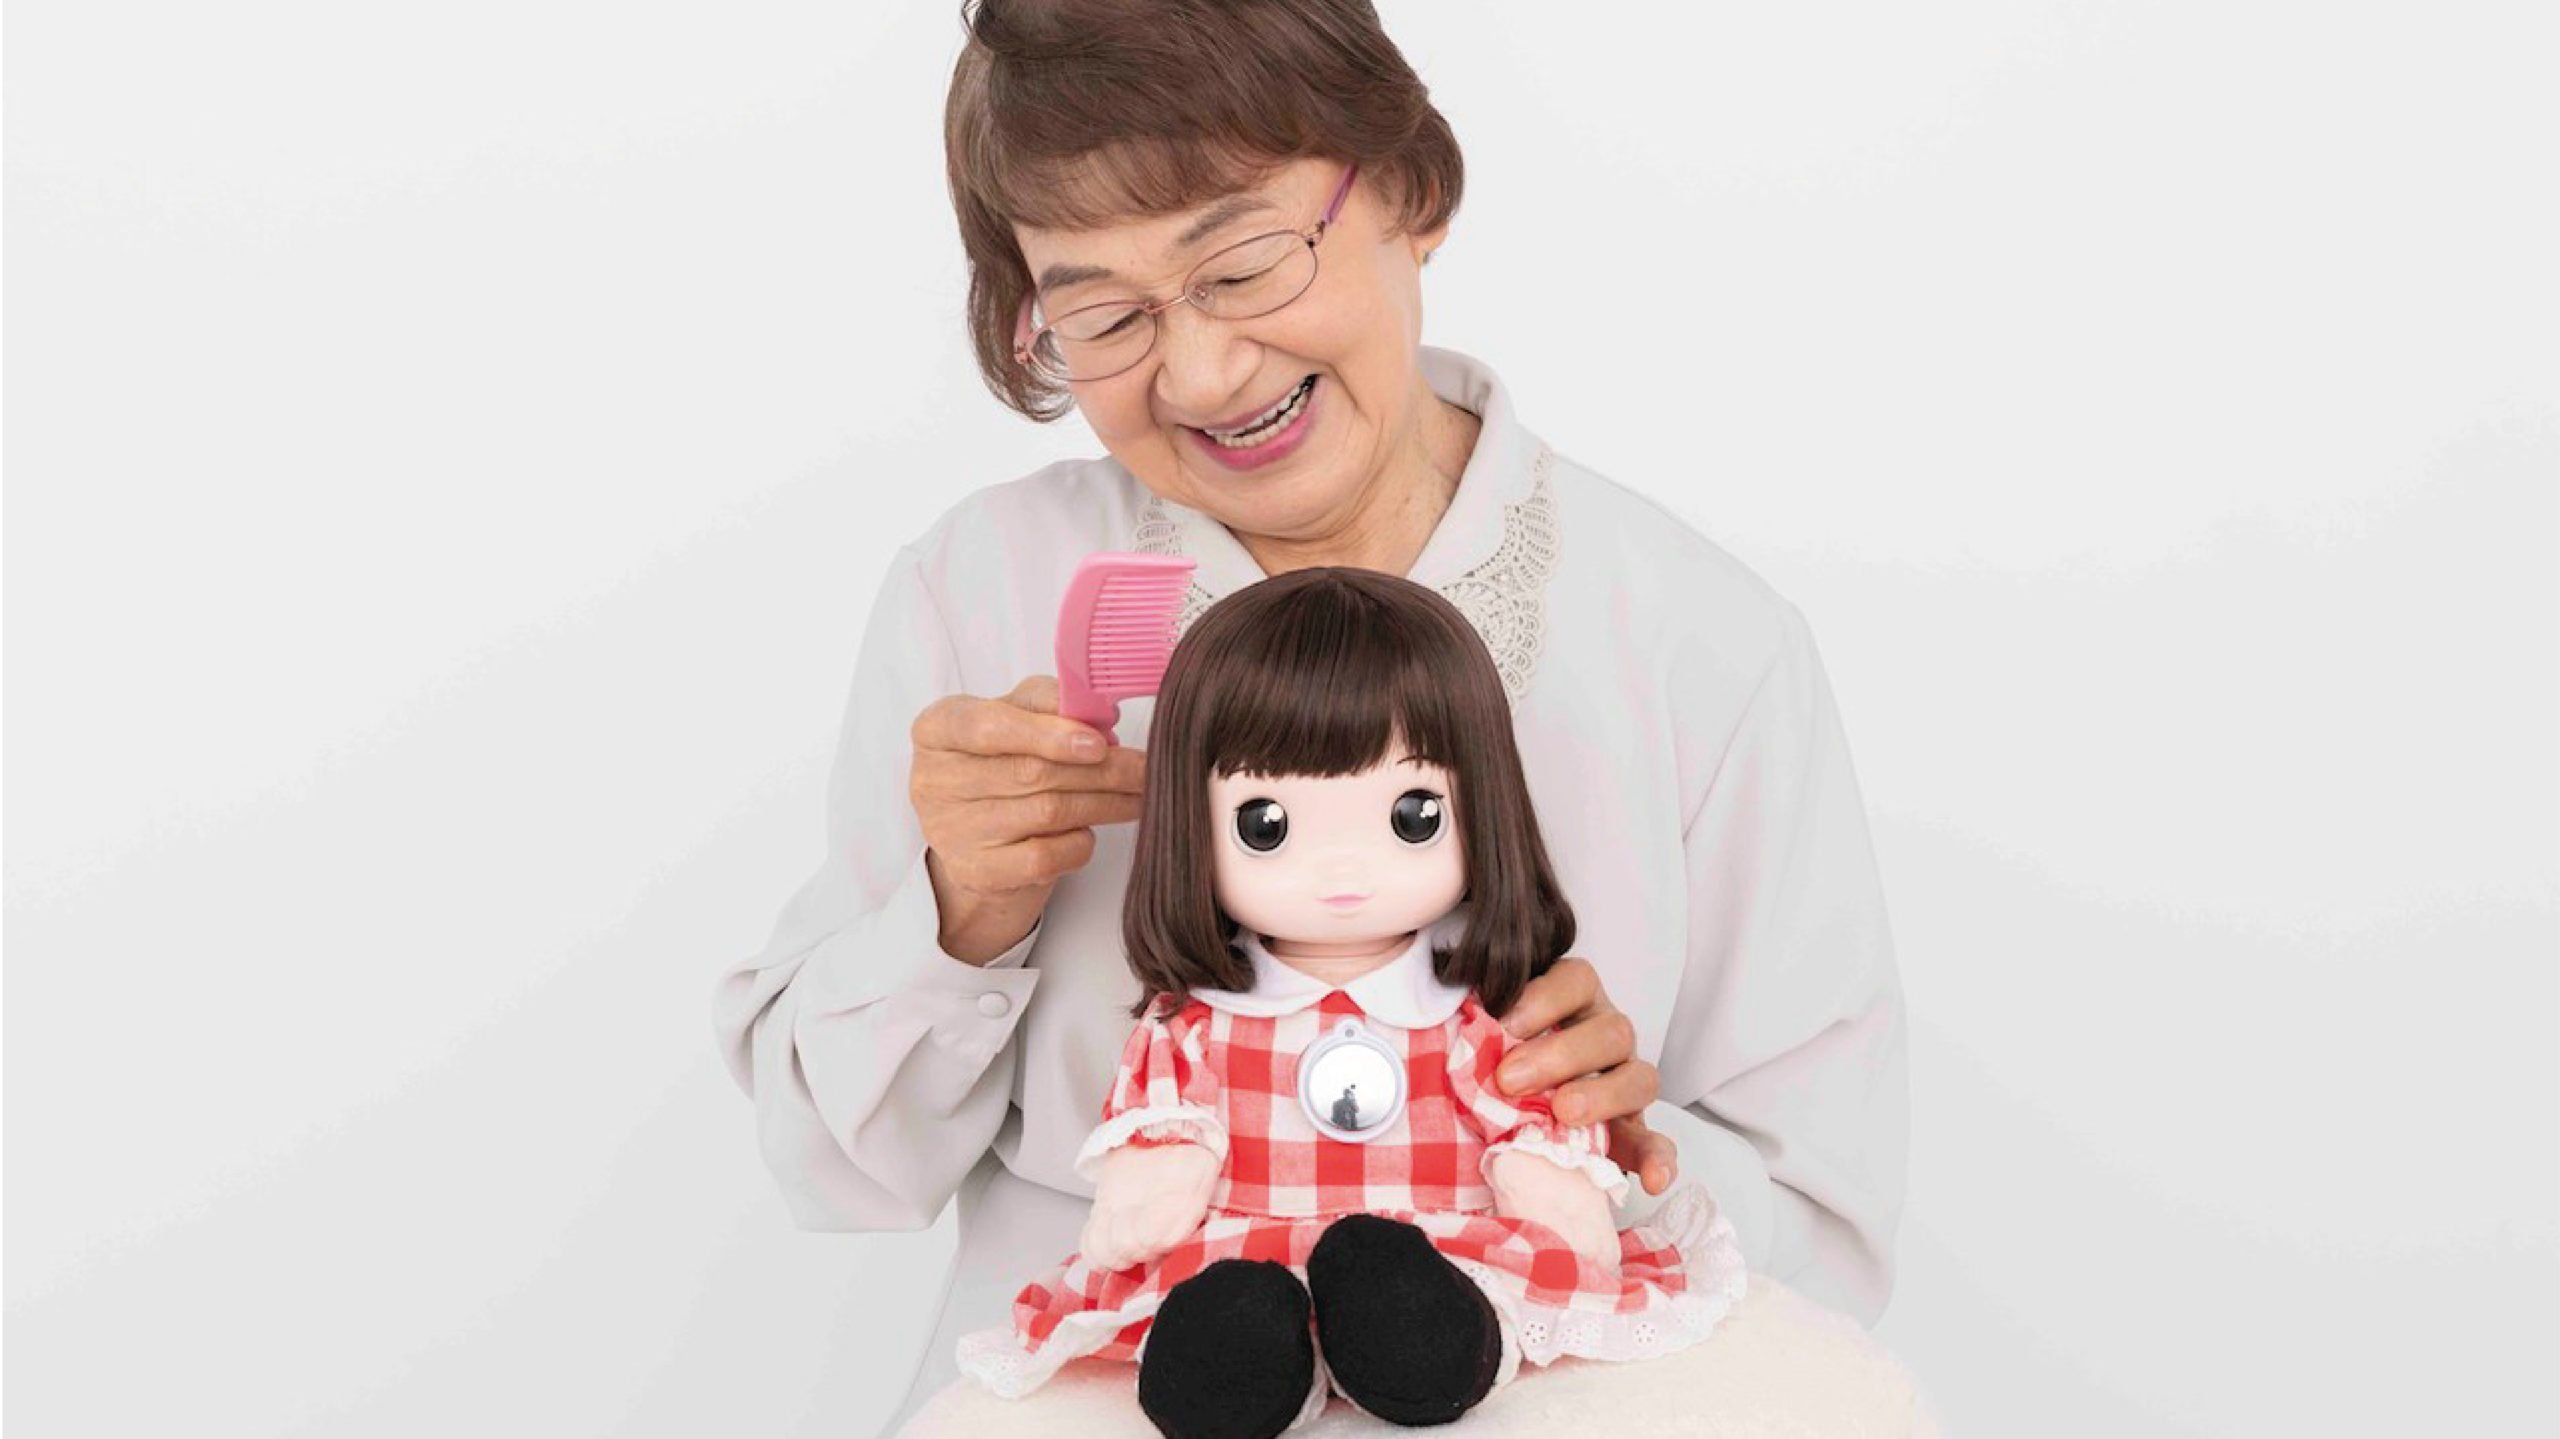 Desarrollan muñeca con IA que promete aliviar efectos del aislamiento social